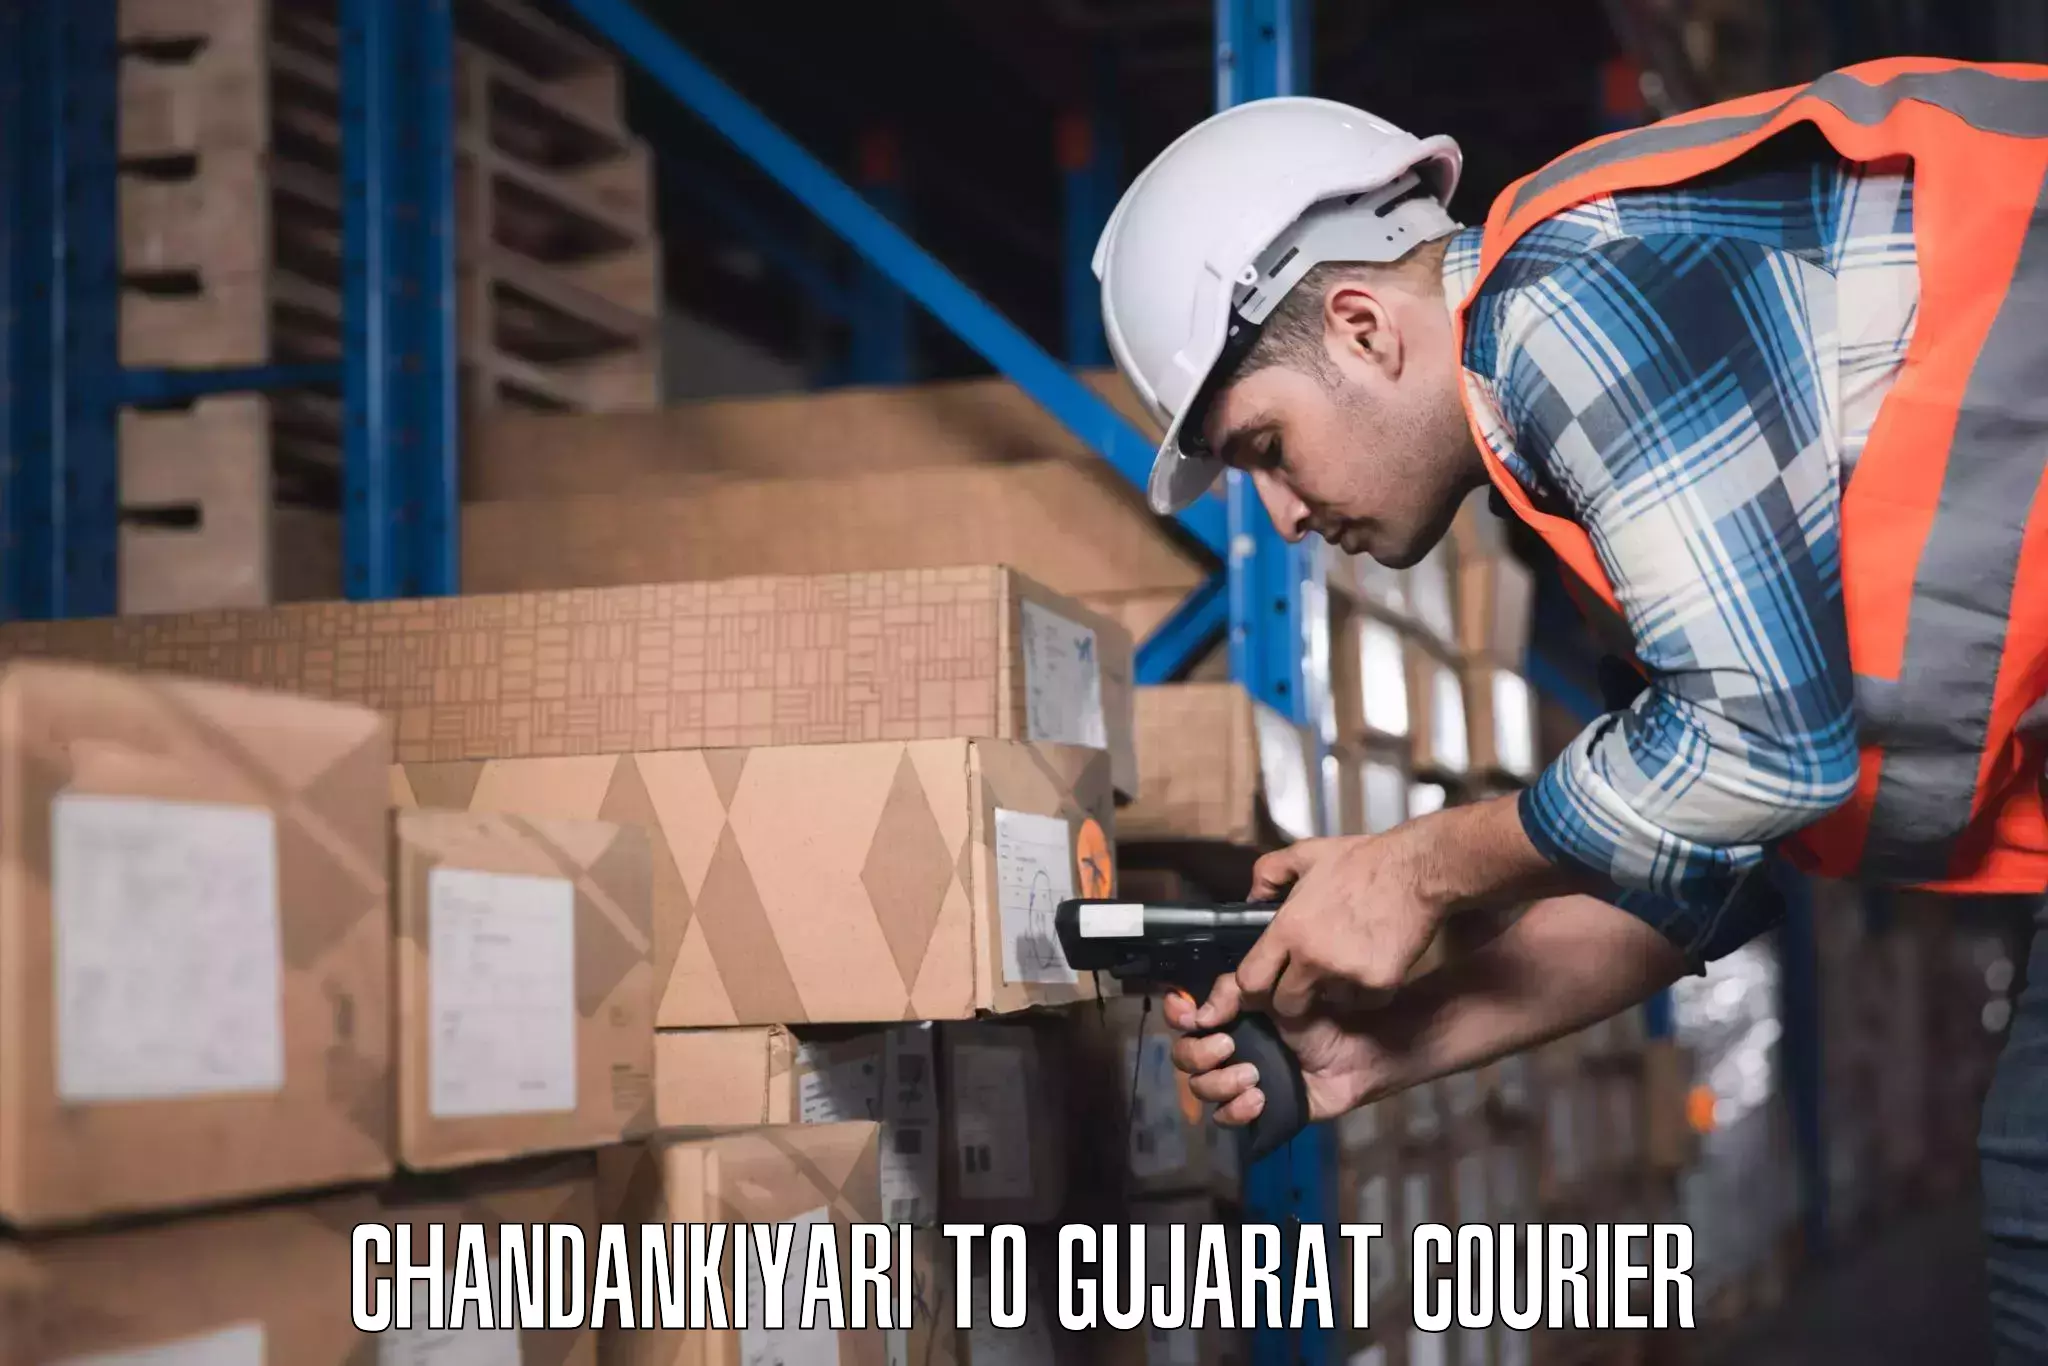 Baggage courier FAQs Chandankiyari to Gujarat